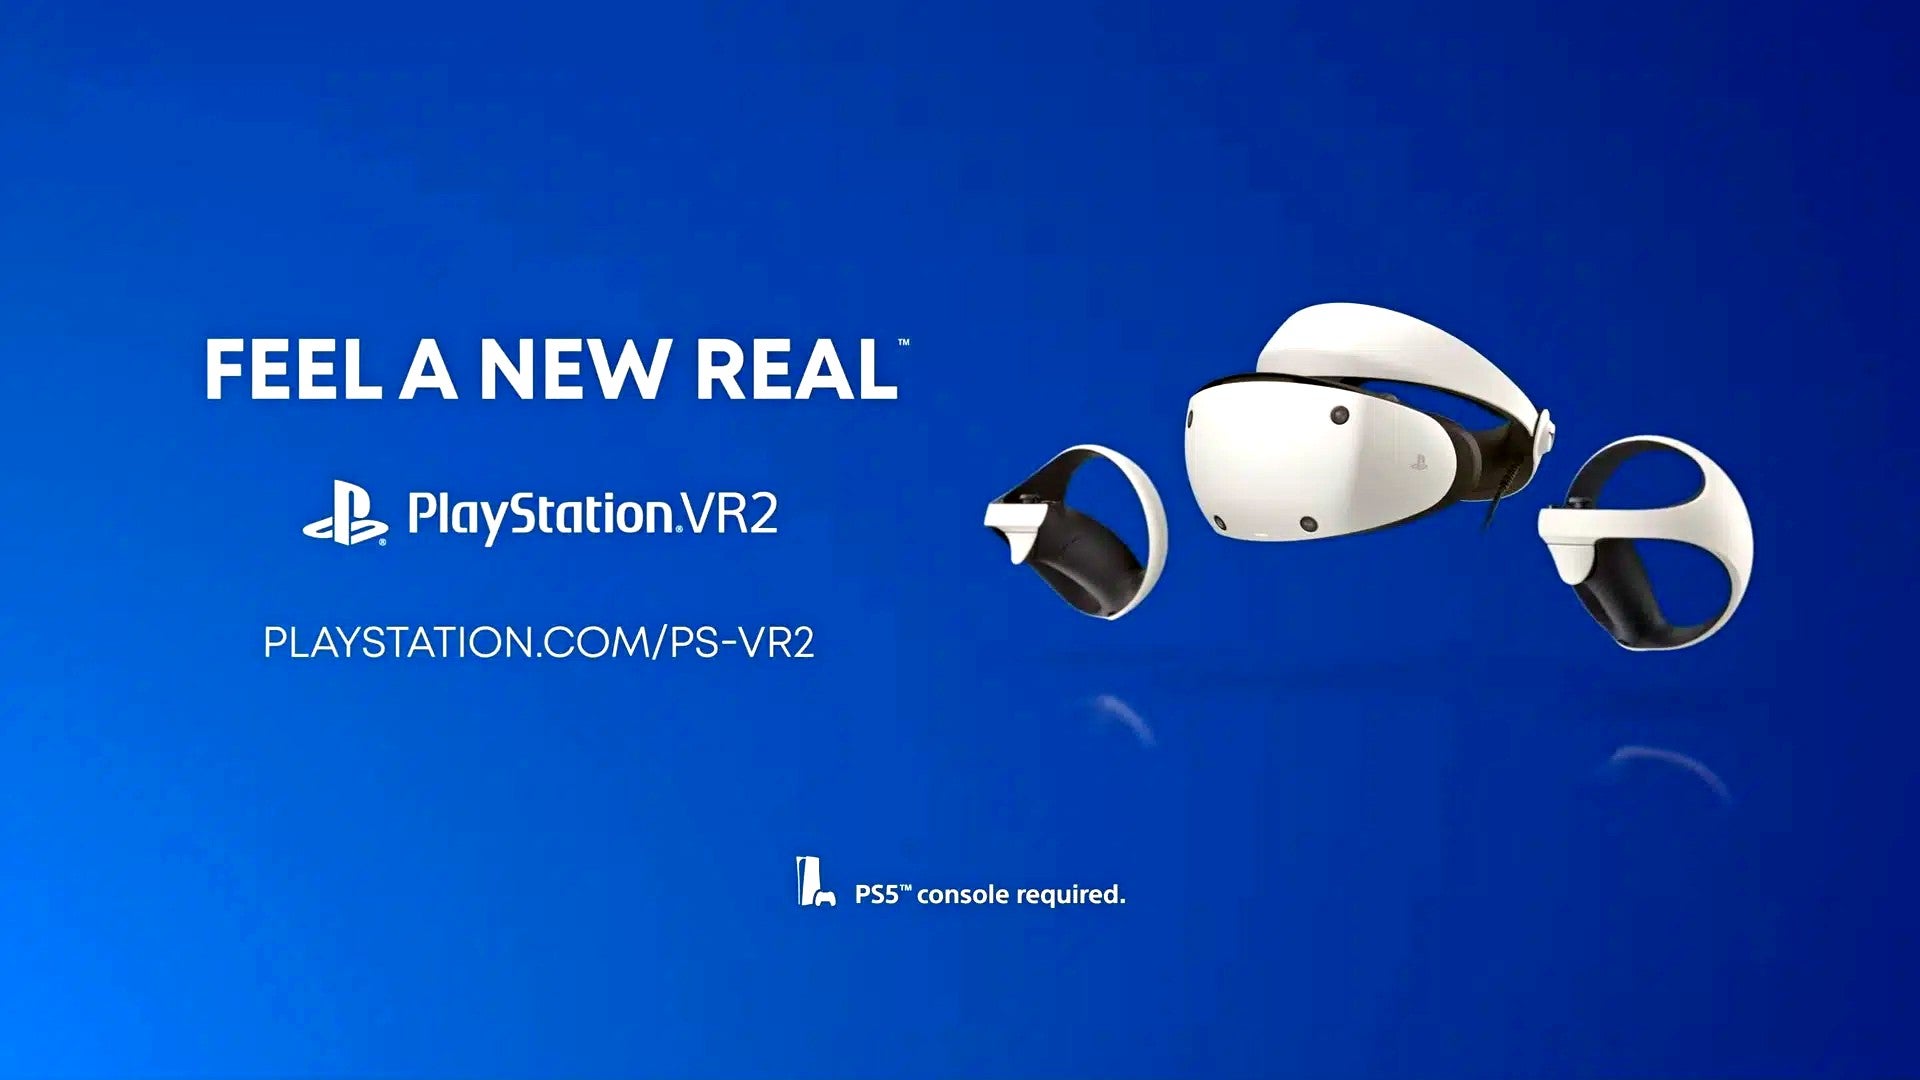 Bilder zu PlayStation VR2: Neuer Trailer "Feel a New Real" präsentiert die Features